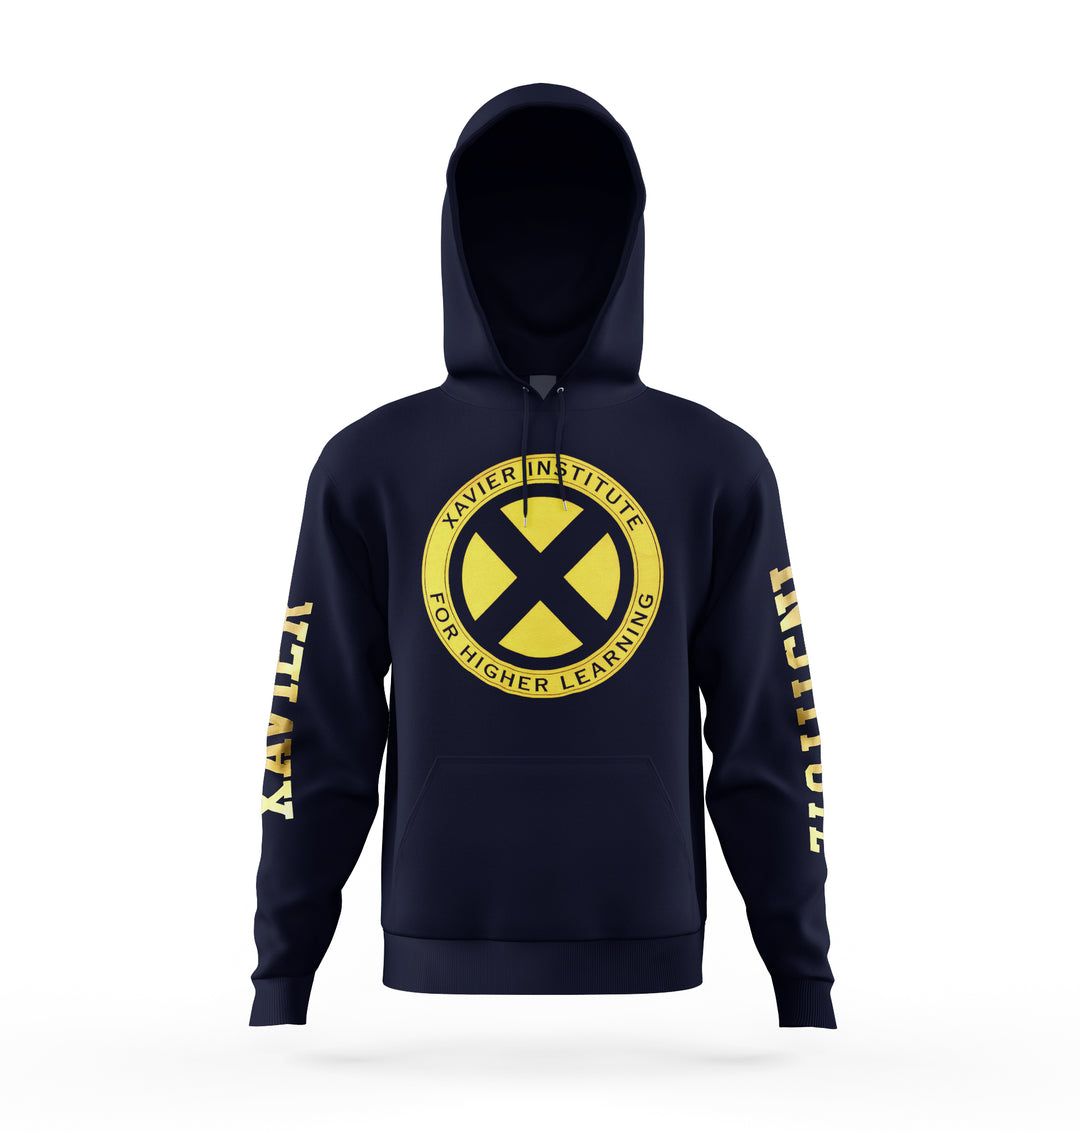 X-Men Xavier Institute Alma mater Marvel Pullover Hoodie